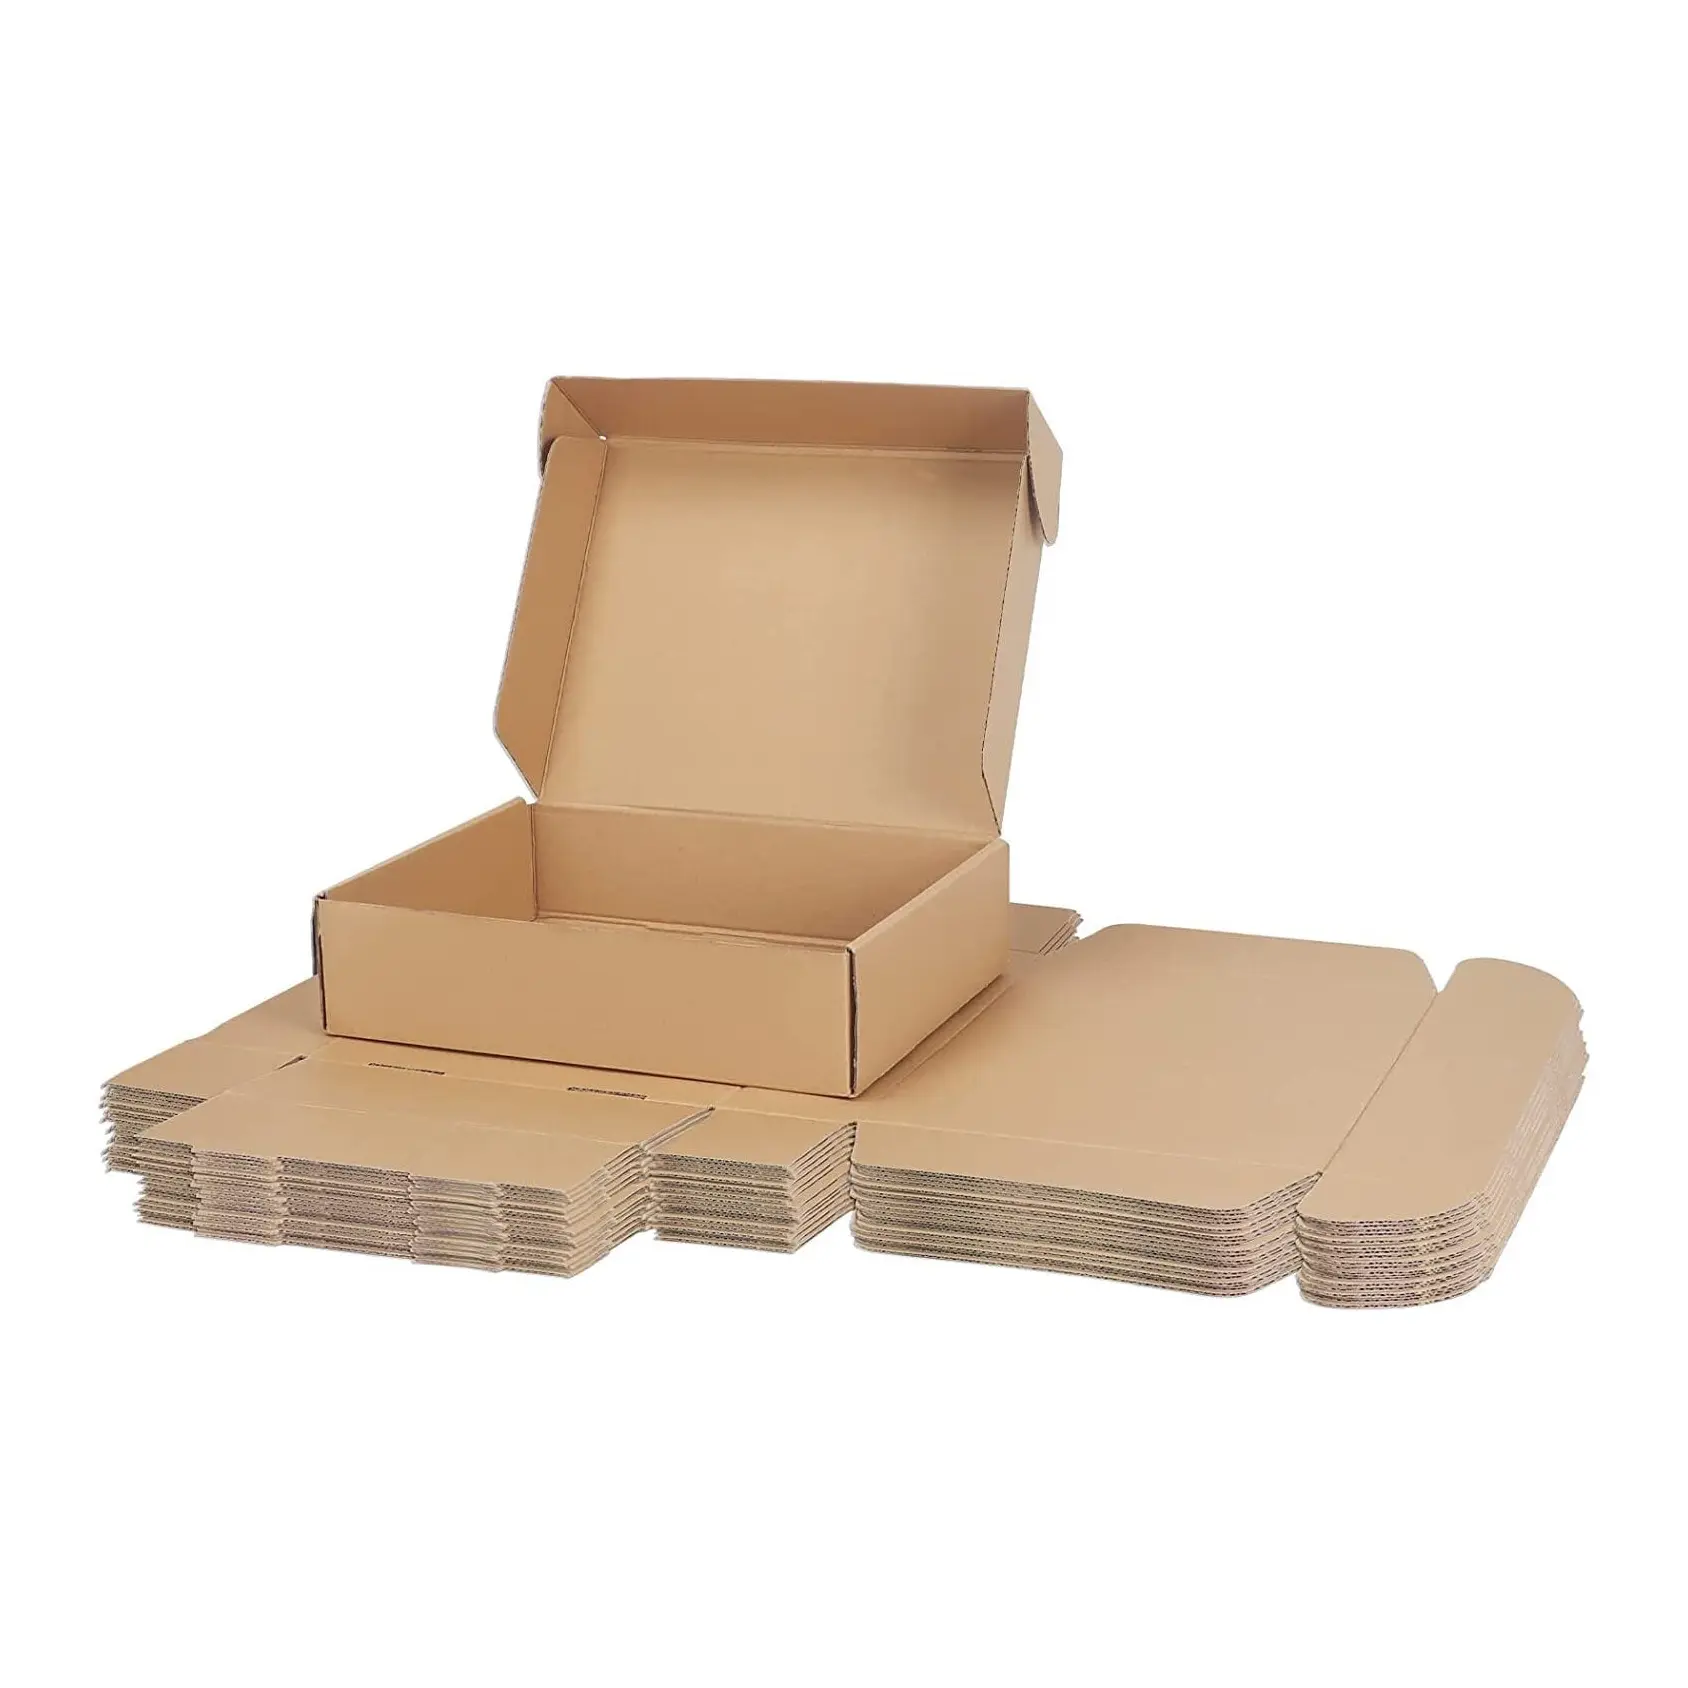 Özel karton ambalaj posta hareketli nakliye kutuları oluklu kutu kartonları özelleştirilmiş boyutu baskı desen katlanabilir çok-